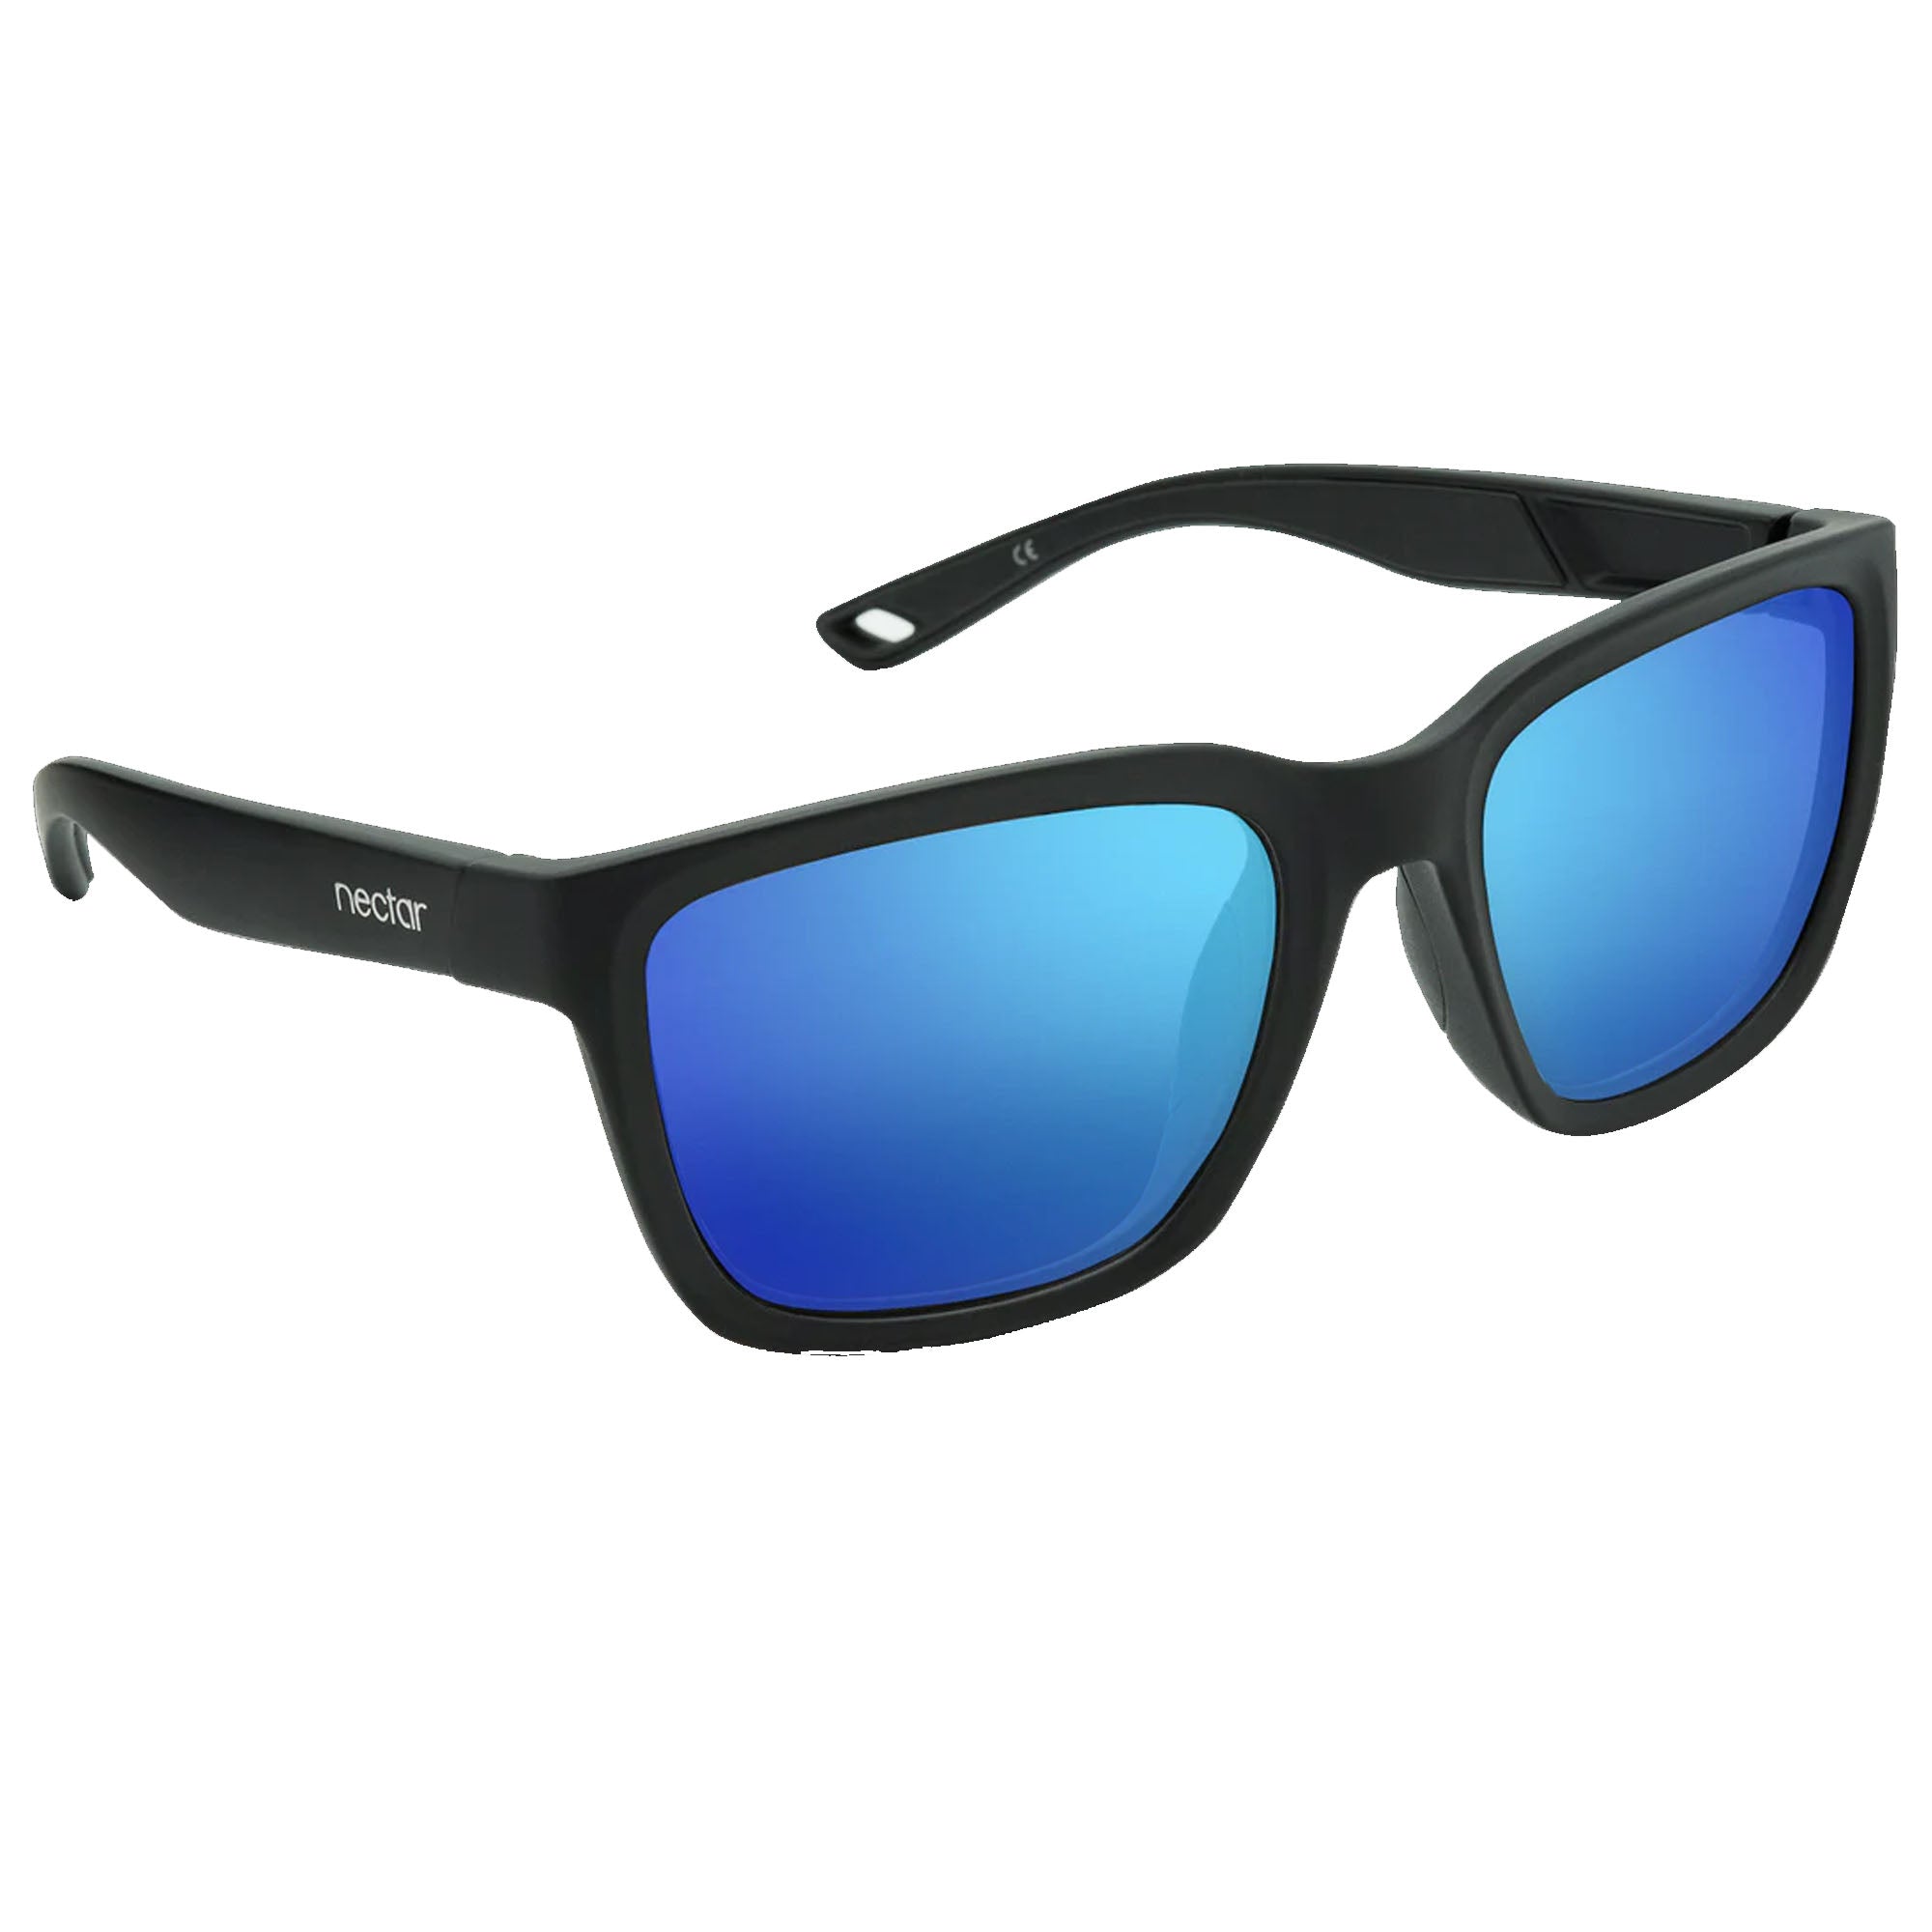 Folly - Polarized Sunglasses - Nectar Black Frame-Blue Lens